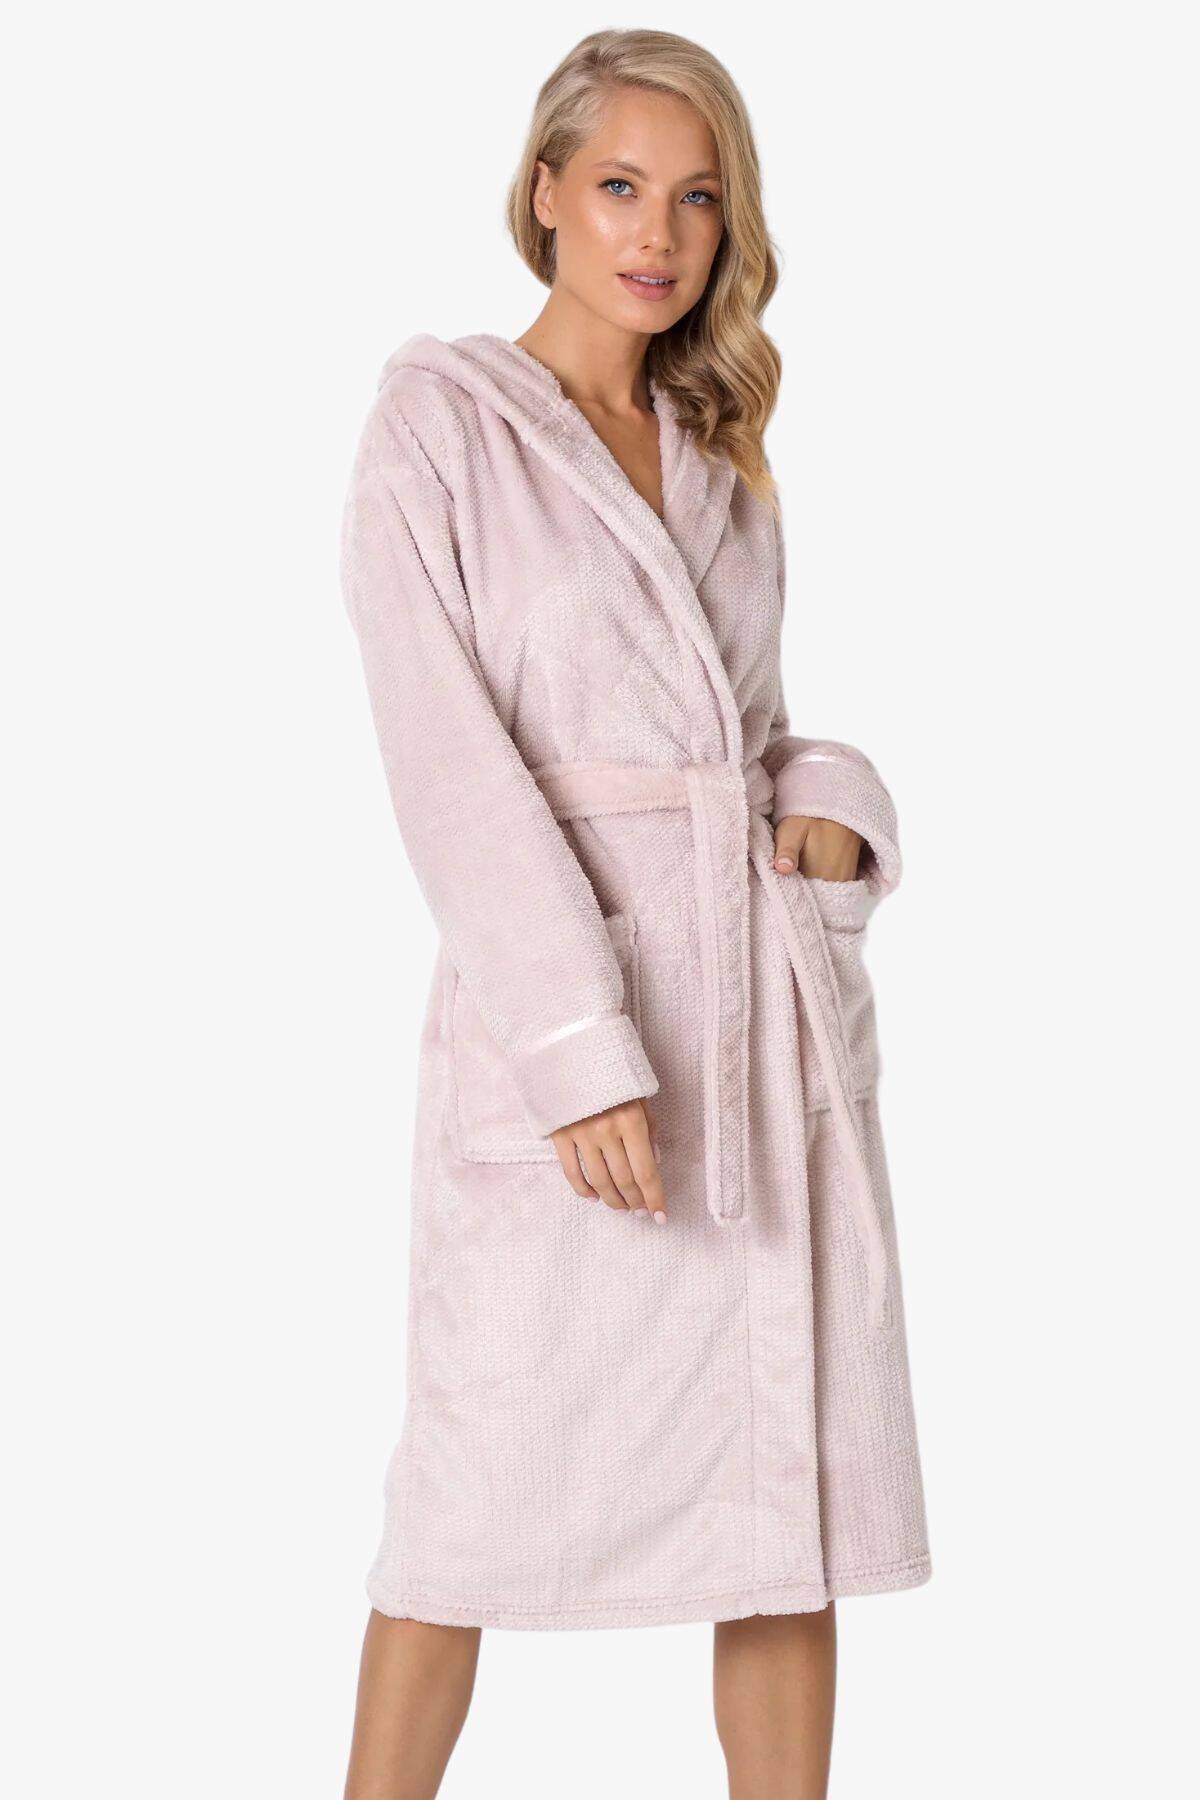 Жіночий халат подовжений ARUELLE Adeline bathrobe baby вид 0